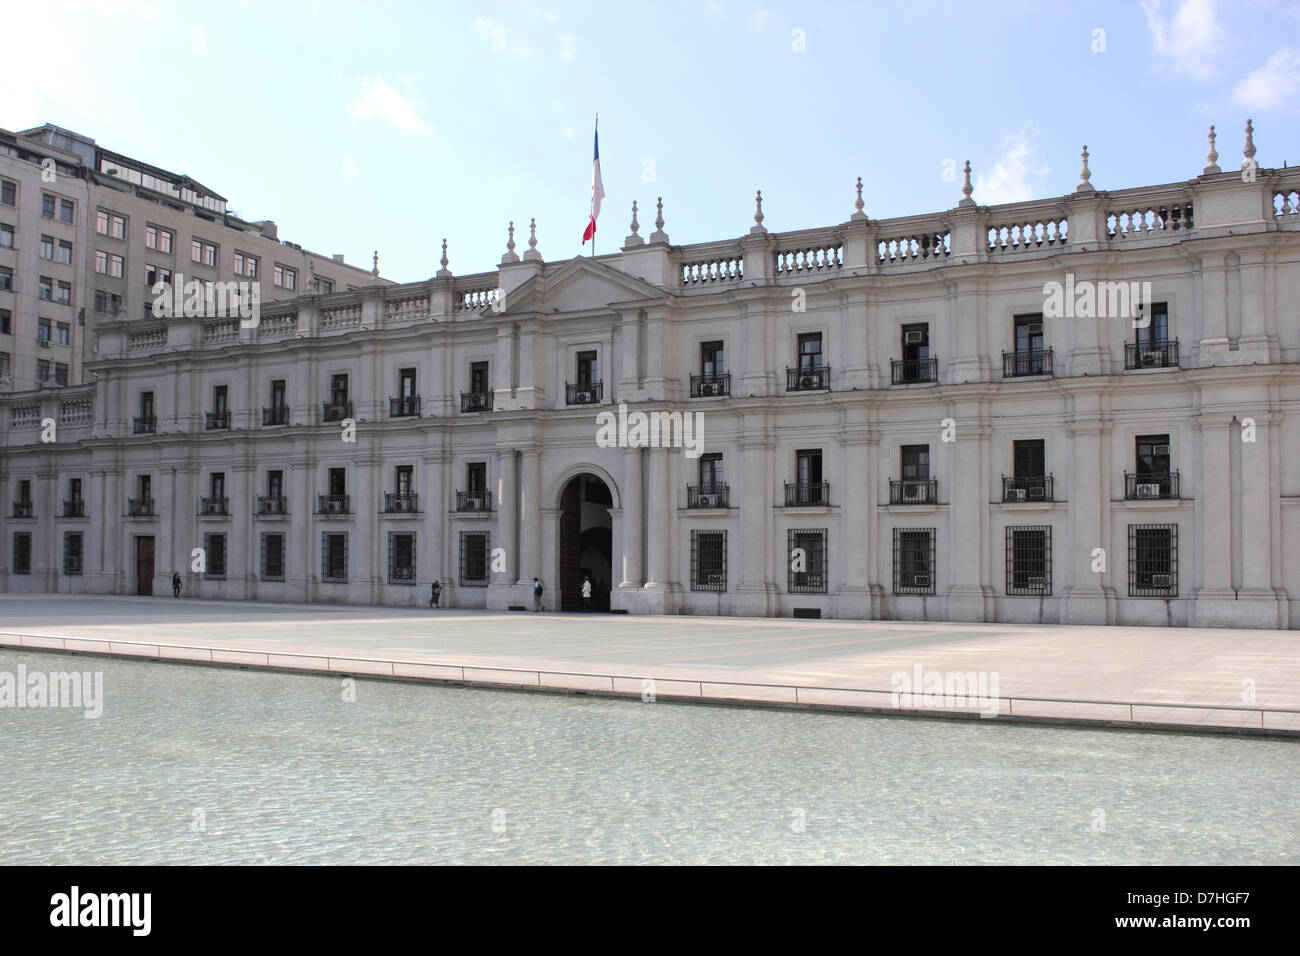 Santiago de Chile Palacio de La Moneda Government palace Stock Photo